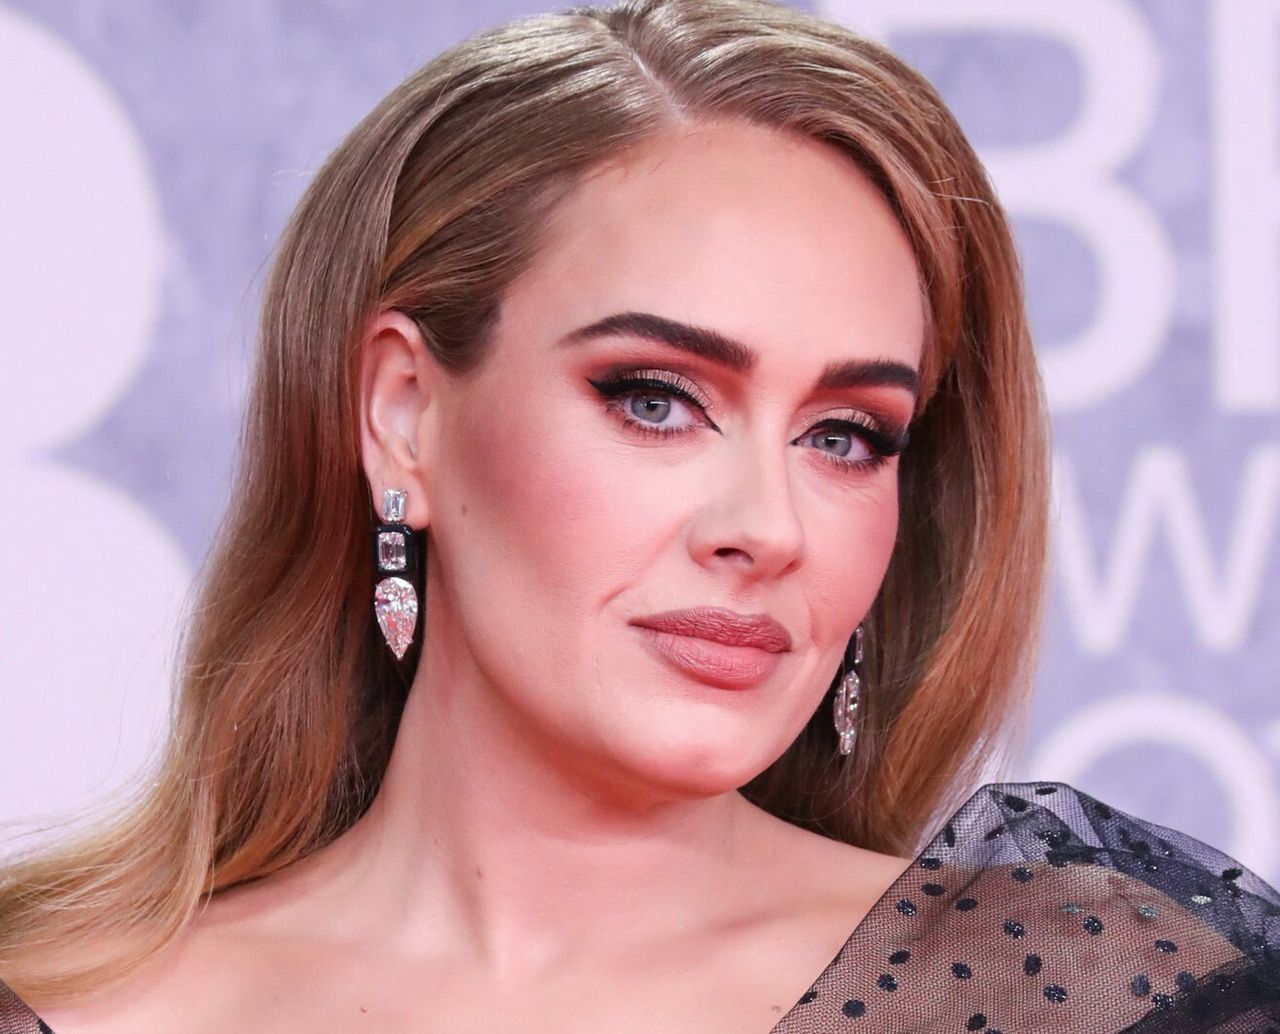 Adele pojawiła się na BRIT Awards. Wokalistka postawiła na klasykę